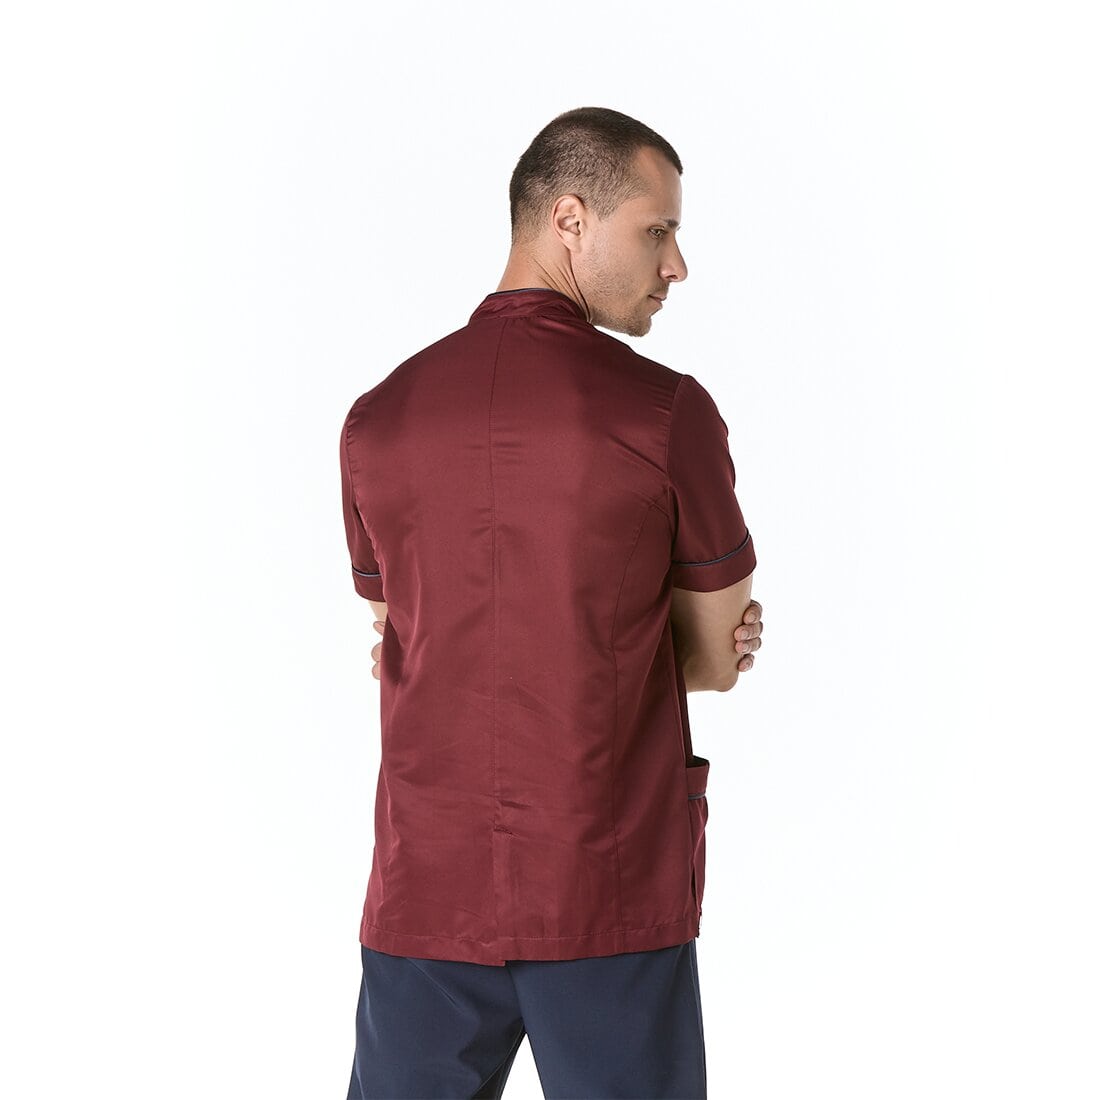 Hombre vistiendo casaca sanitaria color vino con cuello mao y cierre al frente - espalda